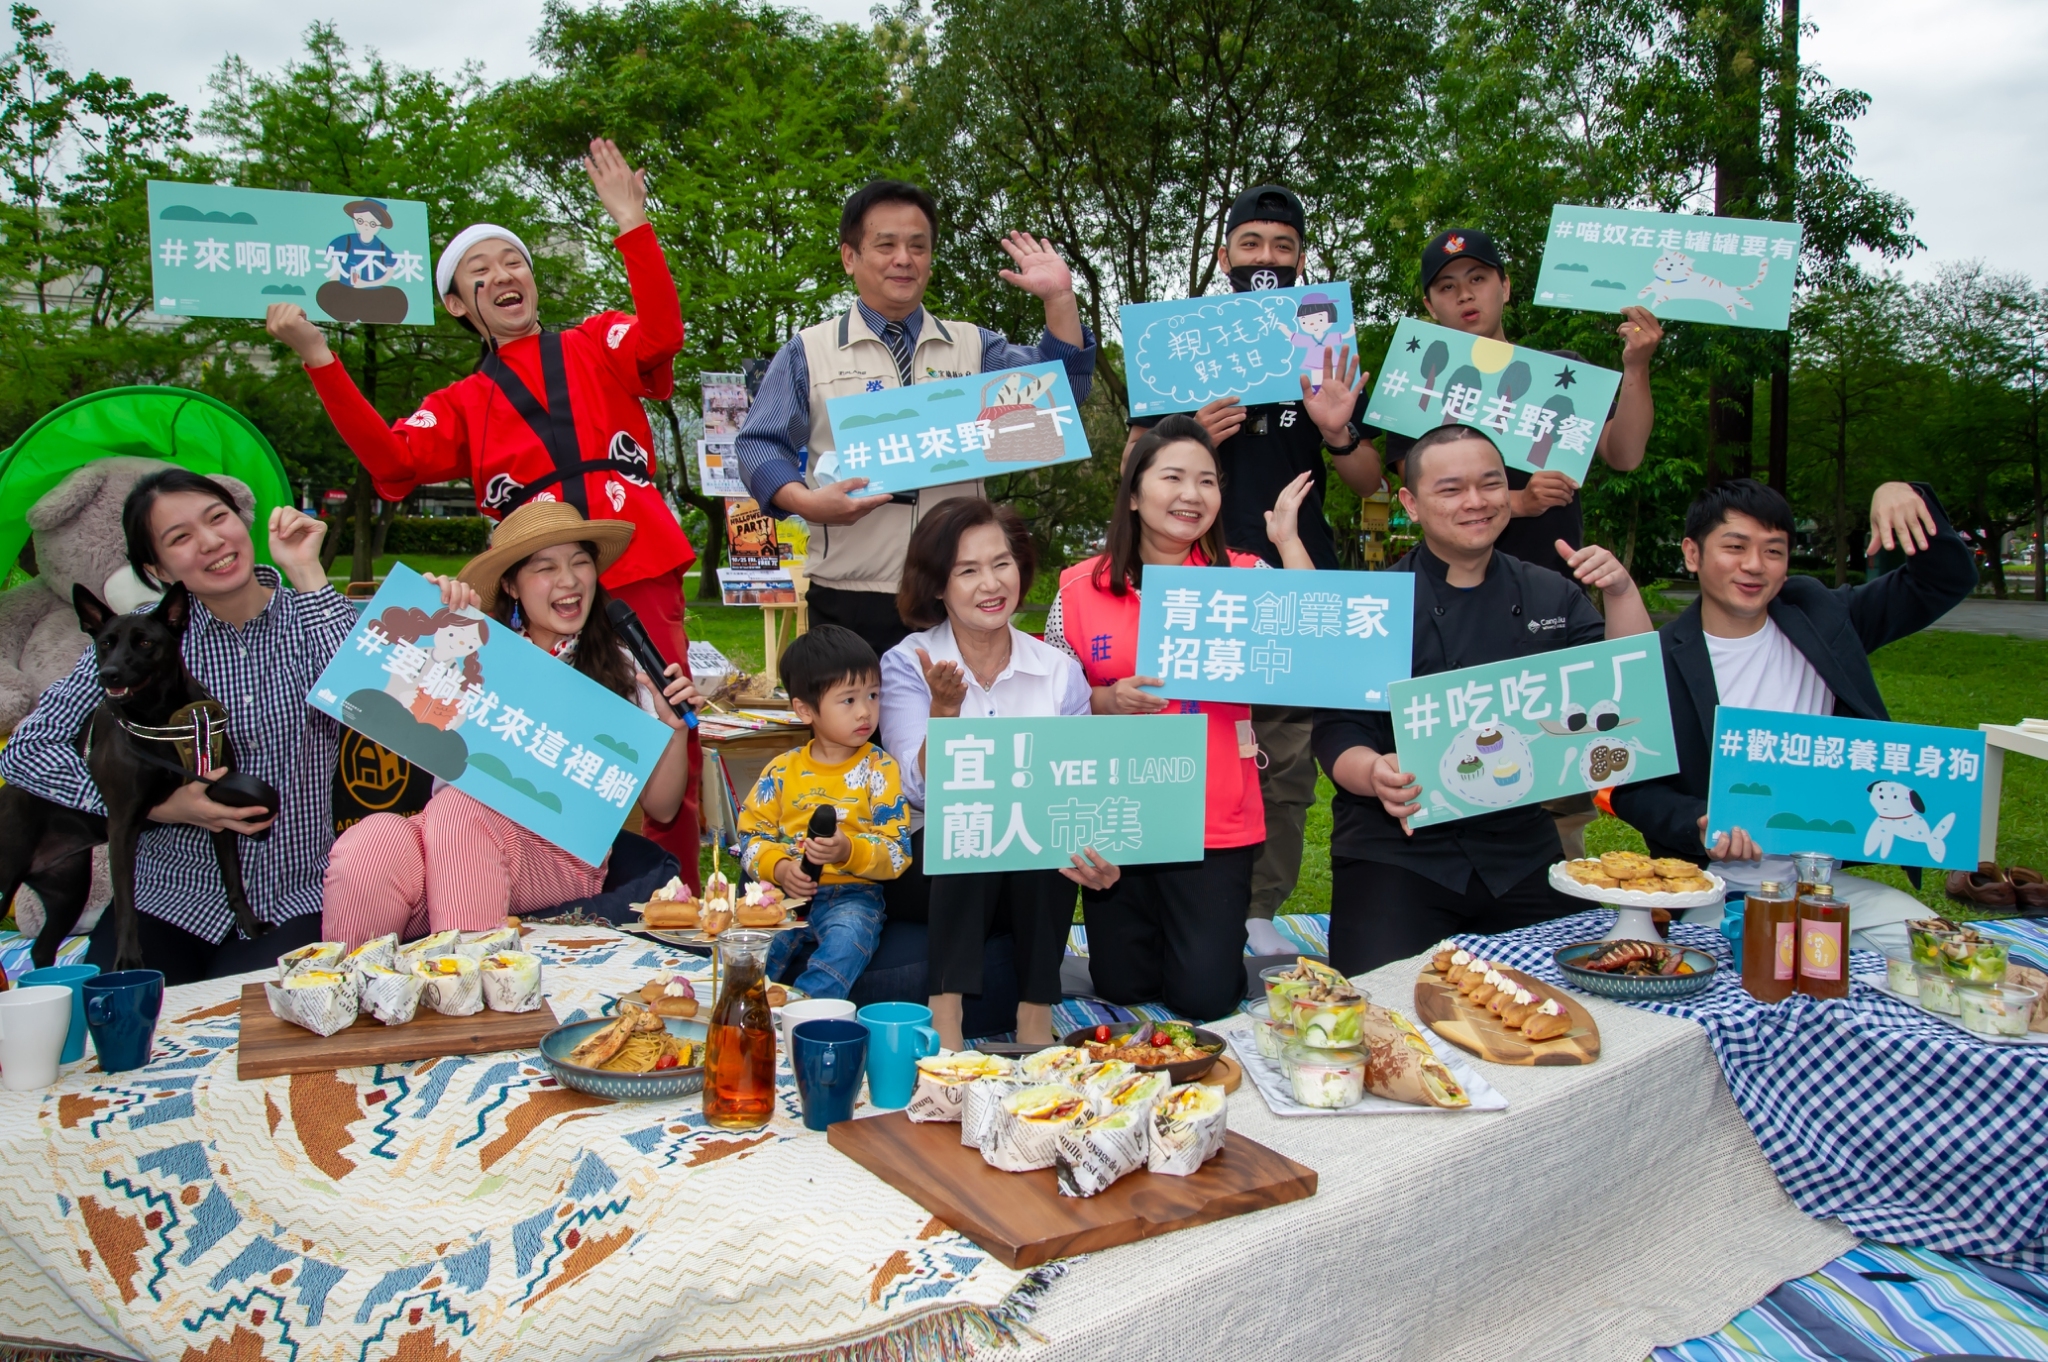 4月 24日親子毛孩子野餐日將在羅東文化工場一起來野餐